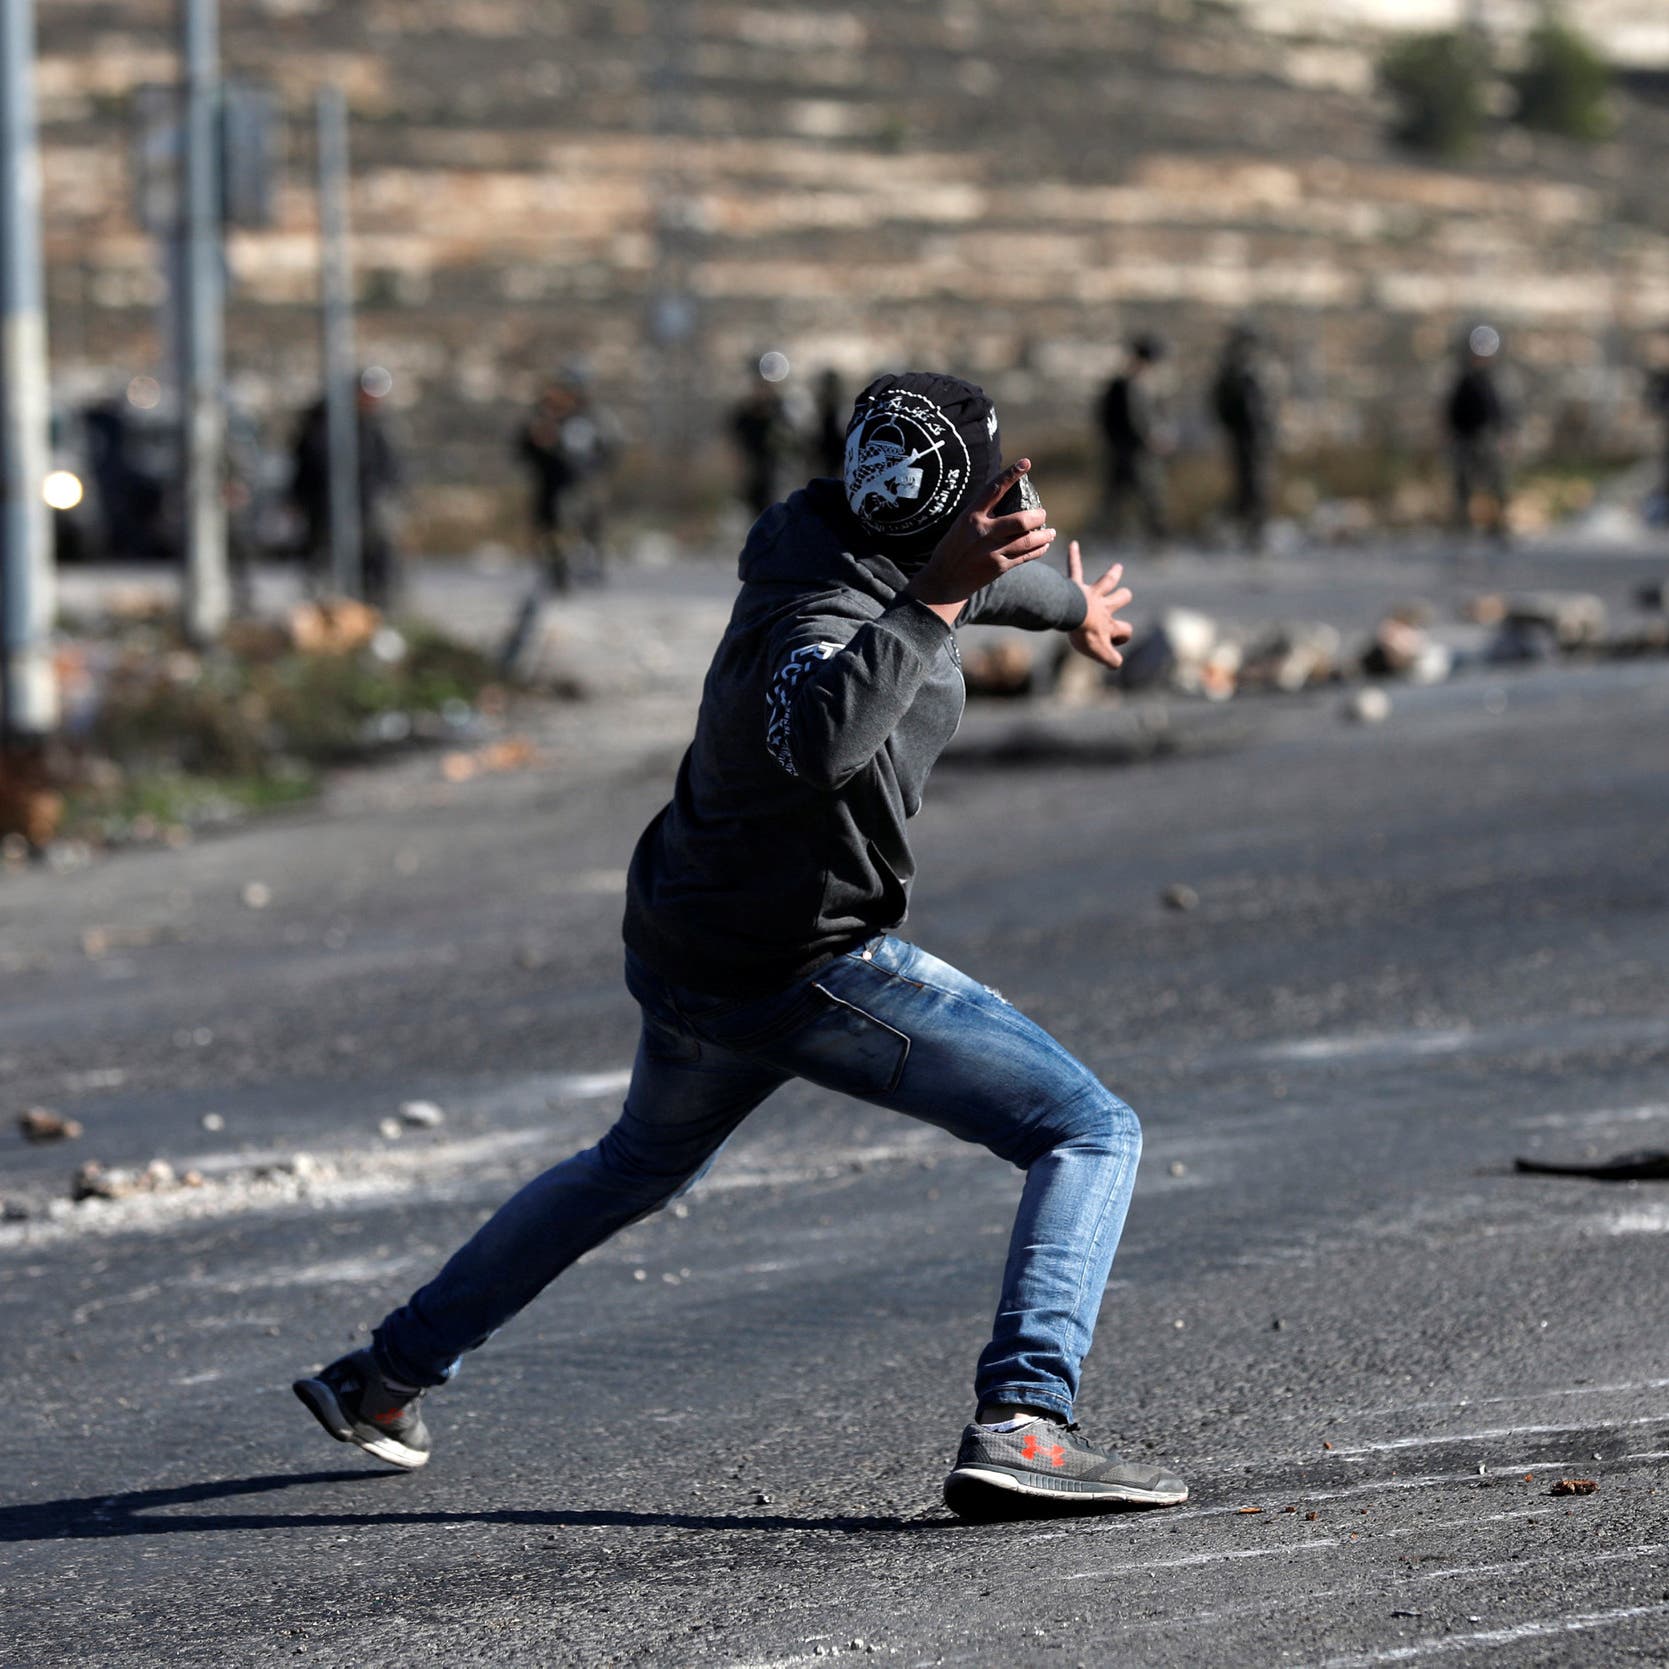 الاحتلال الإسرائيلي يحتجز طاقم "العربية" في الأغوار